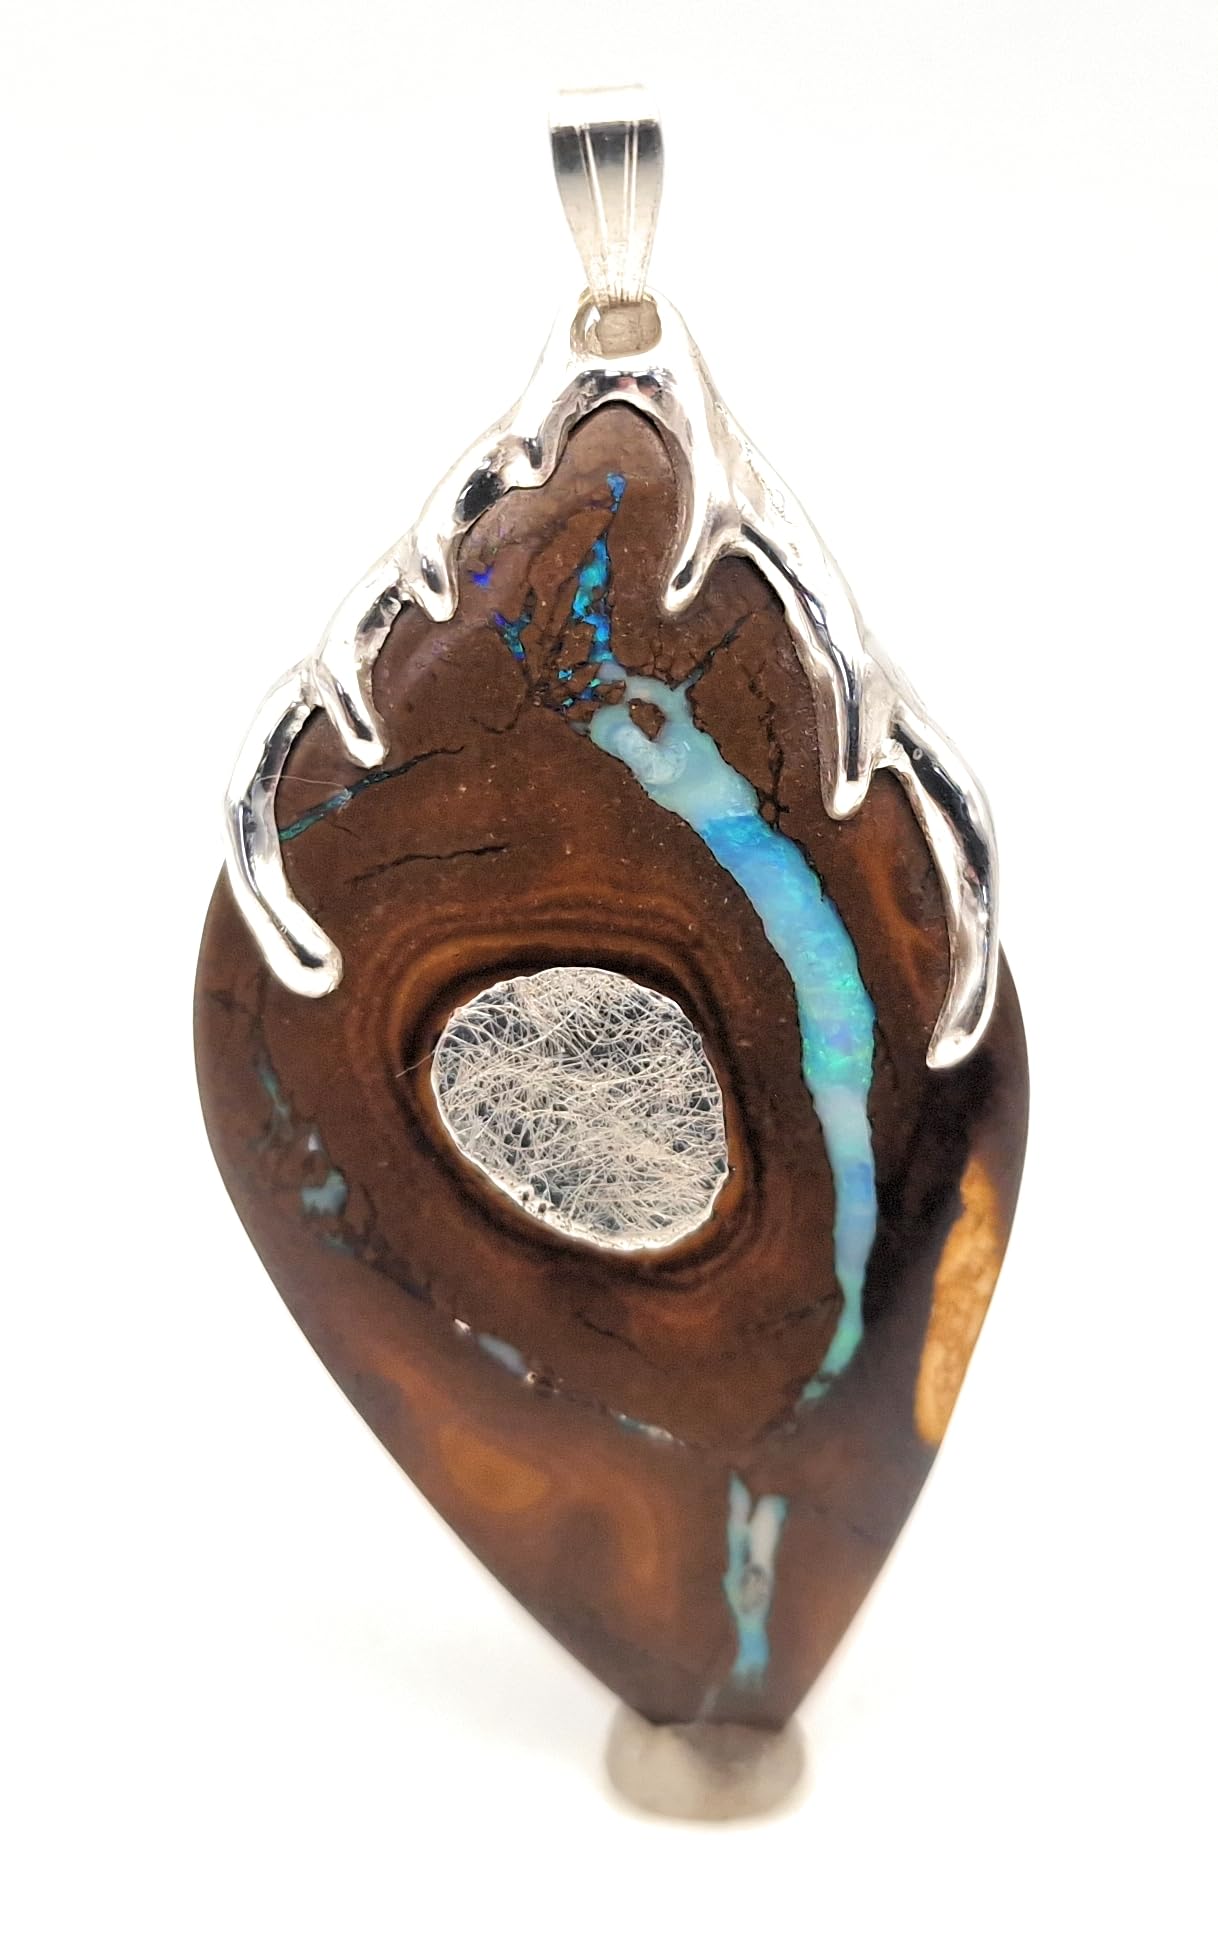 LeoLars-PABE Design Anhänger mit Boulder Opal aus 925er Silber, Silber Inlay, Tropfen Design, Opalader mit grün-blauen Opalfeuer, Unikat, Handarbeit